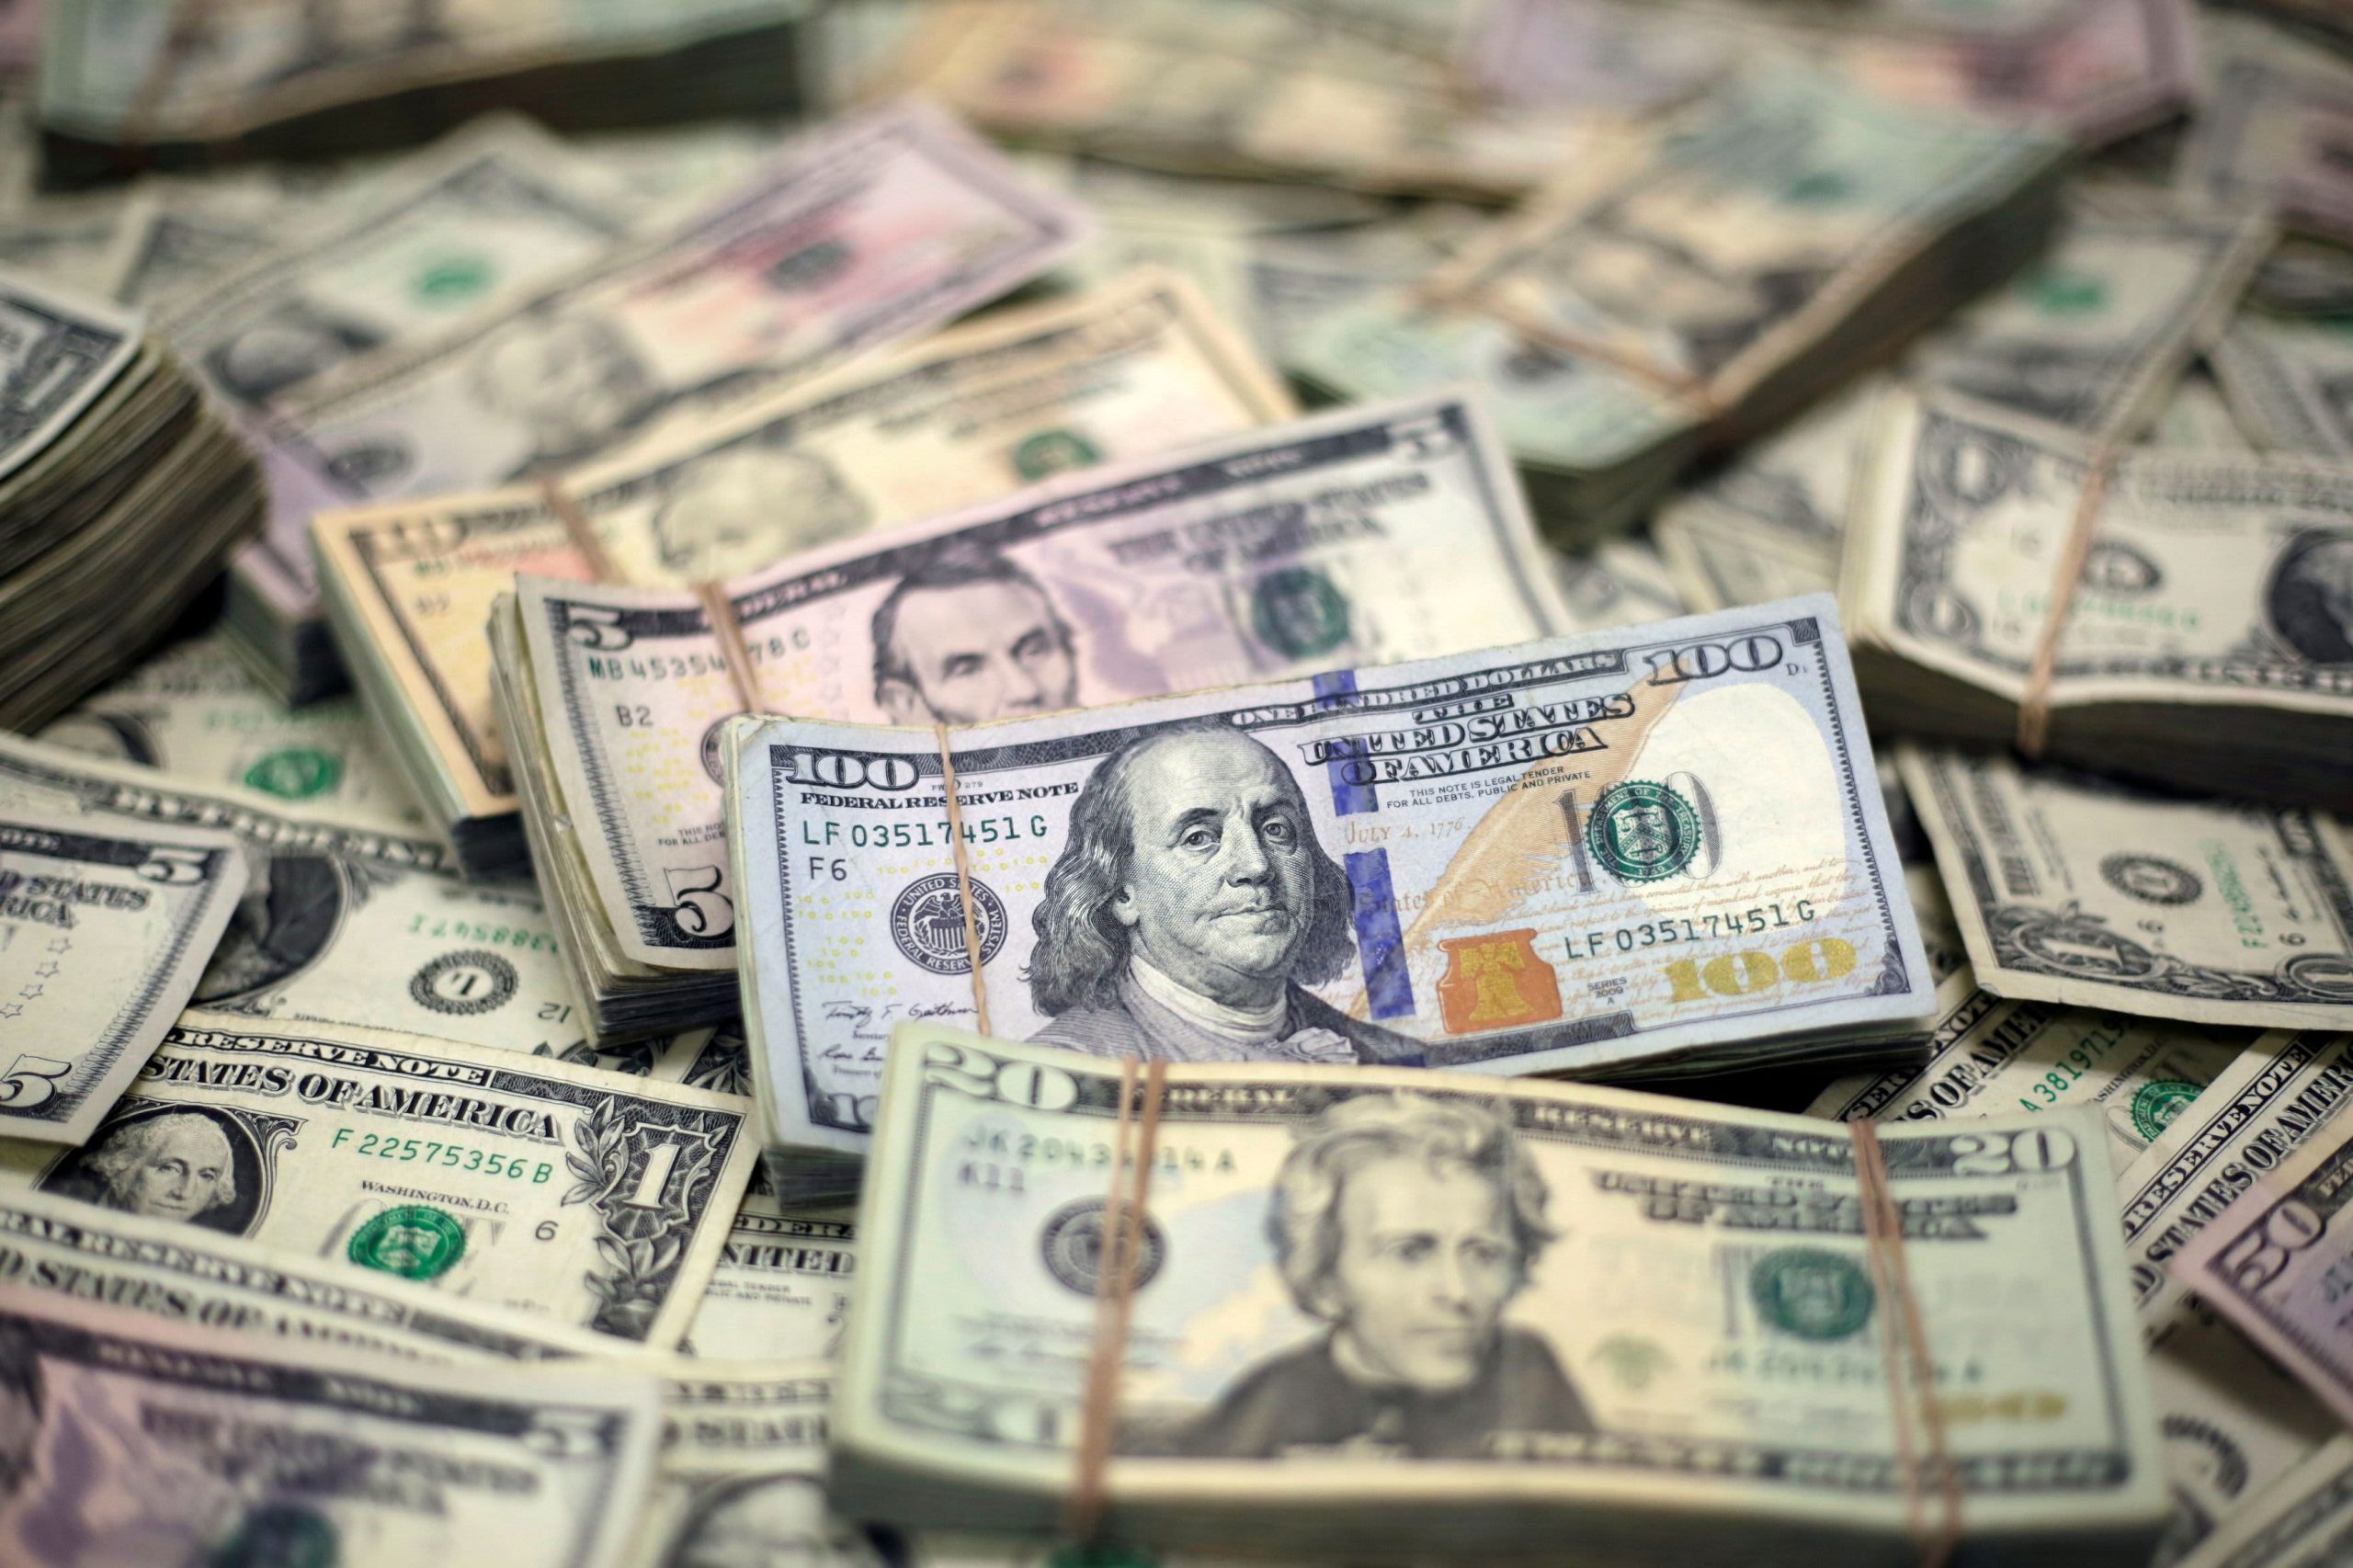 Los delincuentes han robado casi $ 100 mil millones en fondos de ayuda de Covid, dice el Servicio Secreto